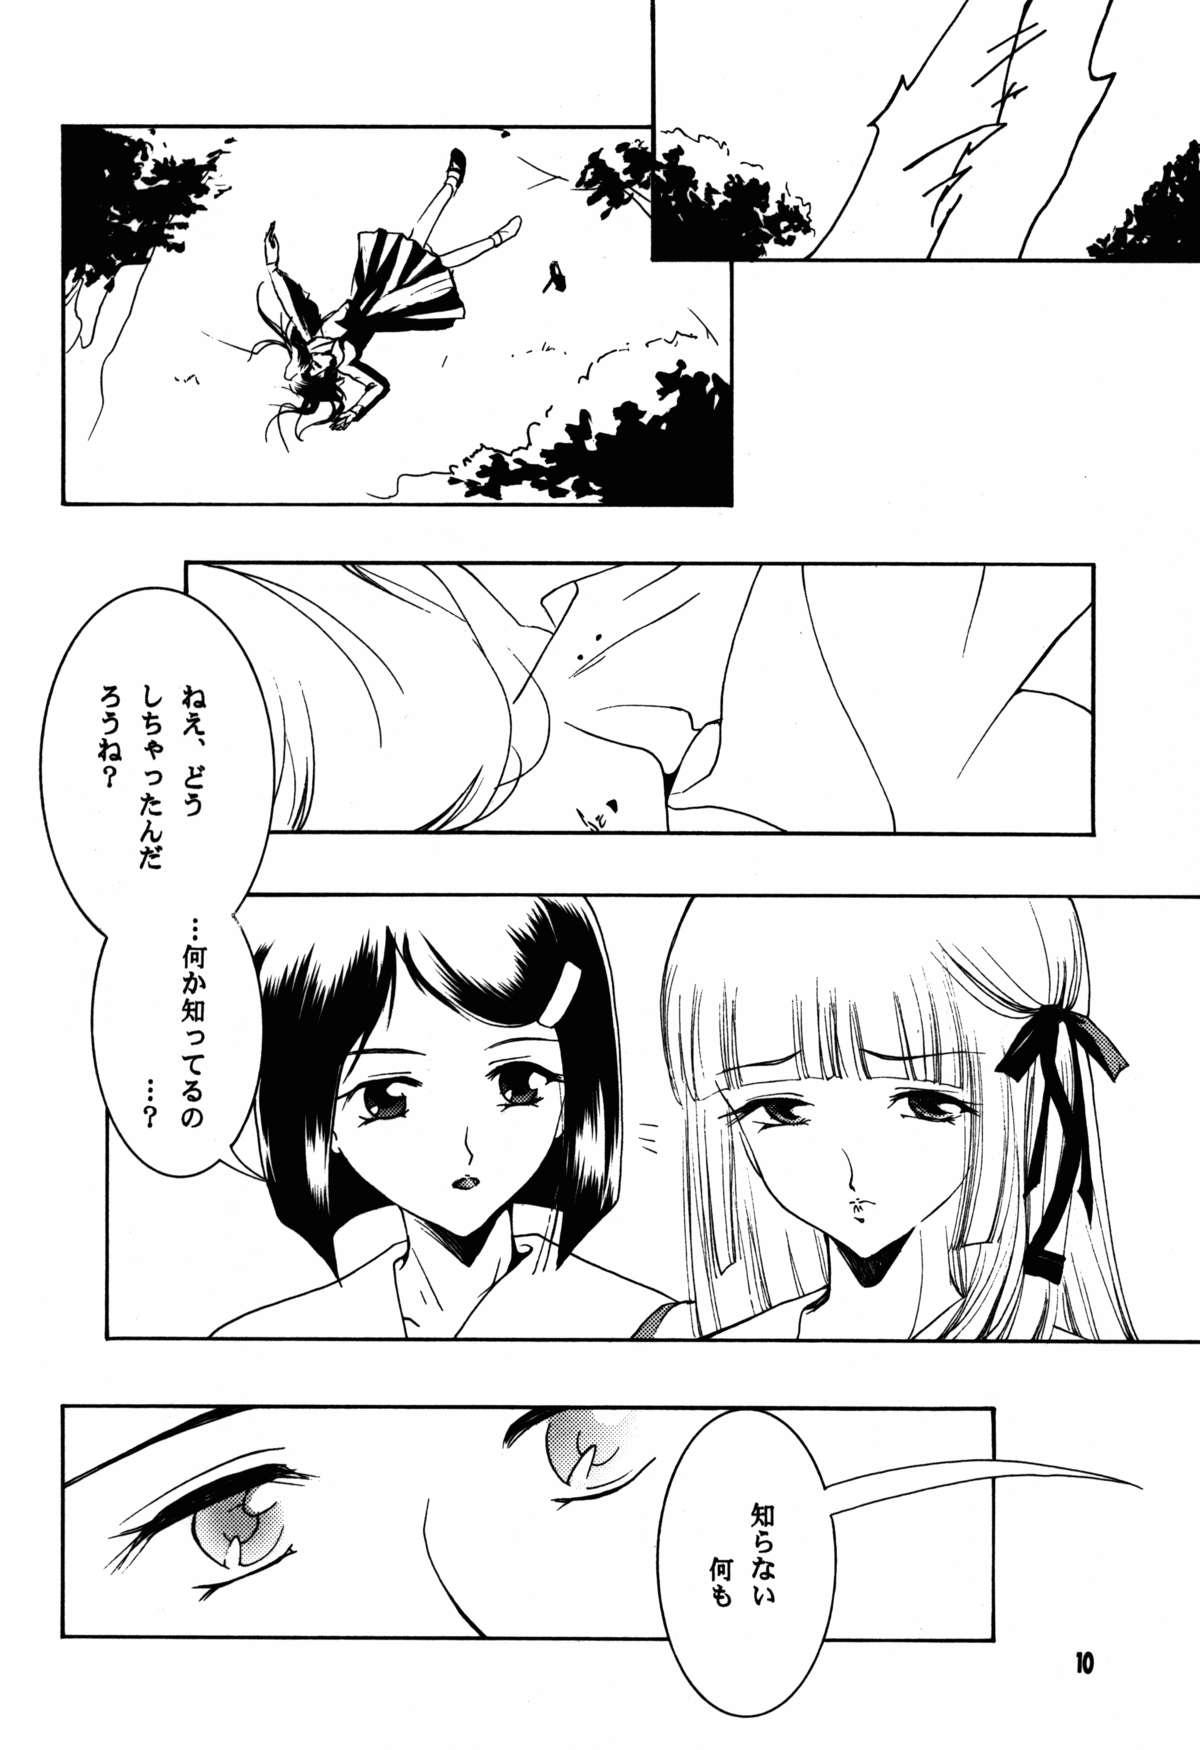 Girlfriends Hadashi no VAMPIRE 17 - Vampire princess miyu Chupando - Page 10